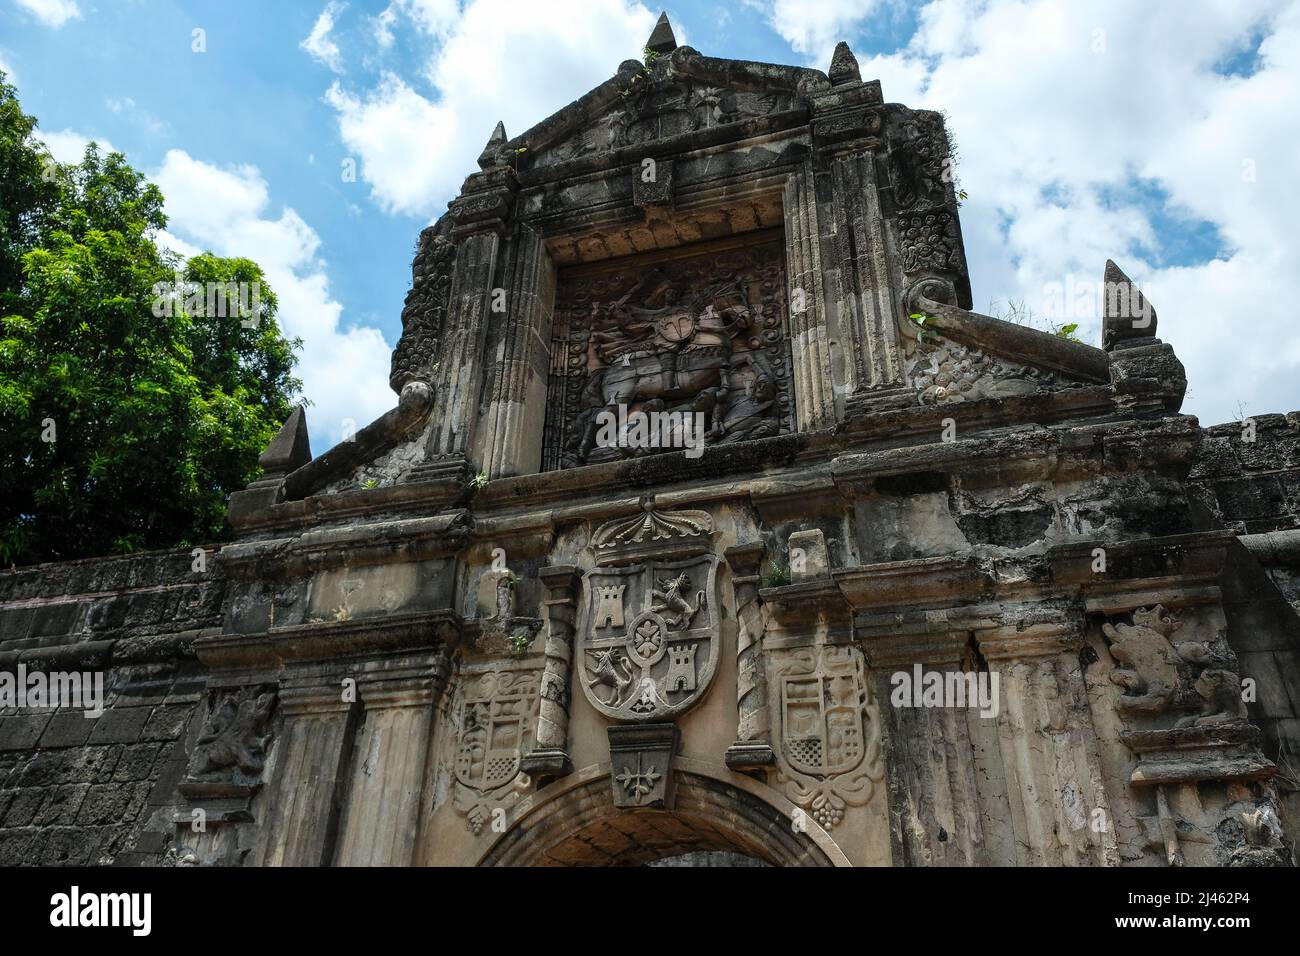 Porta di Fort Santiago a Intramuros, Manila, Filippine. La fortezza difensiva si trova a Intramuros, la città fortificata di Manila. Foto Stock